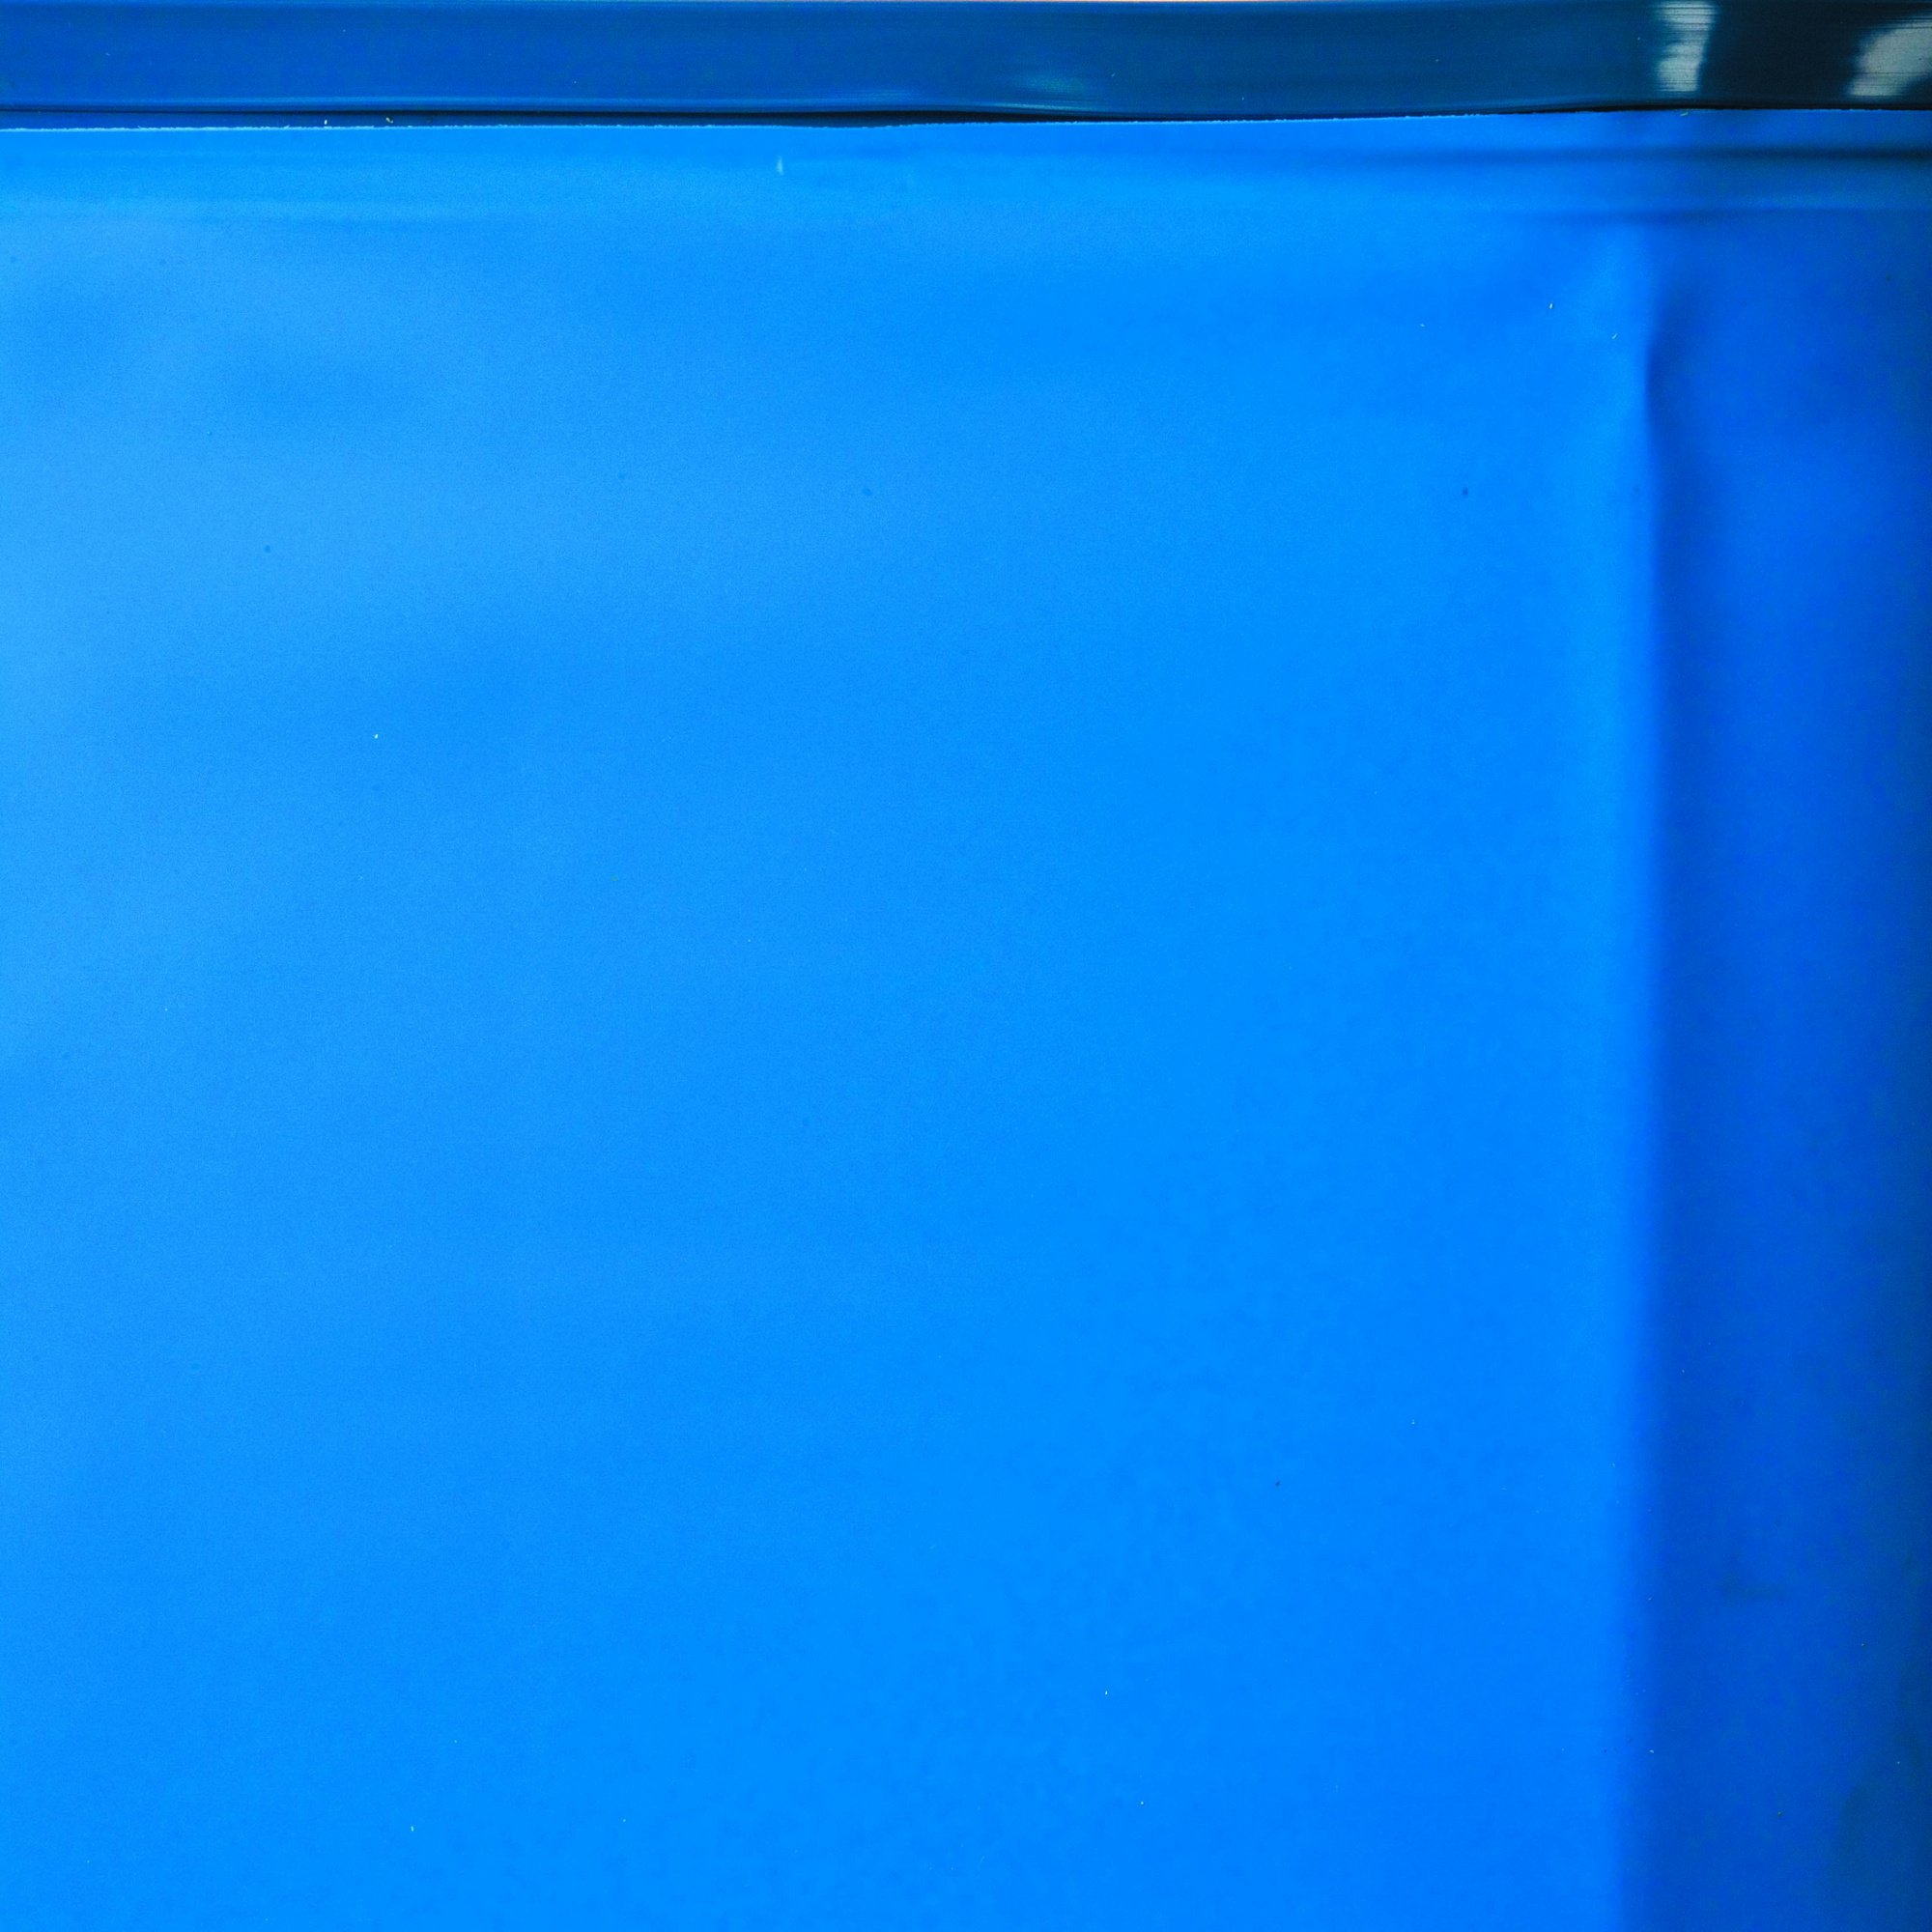 Innenfolie für Pool 'Violette 2' blau Ø 442 x 124 cm + product picture